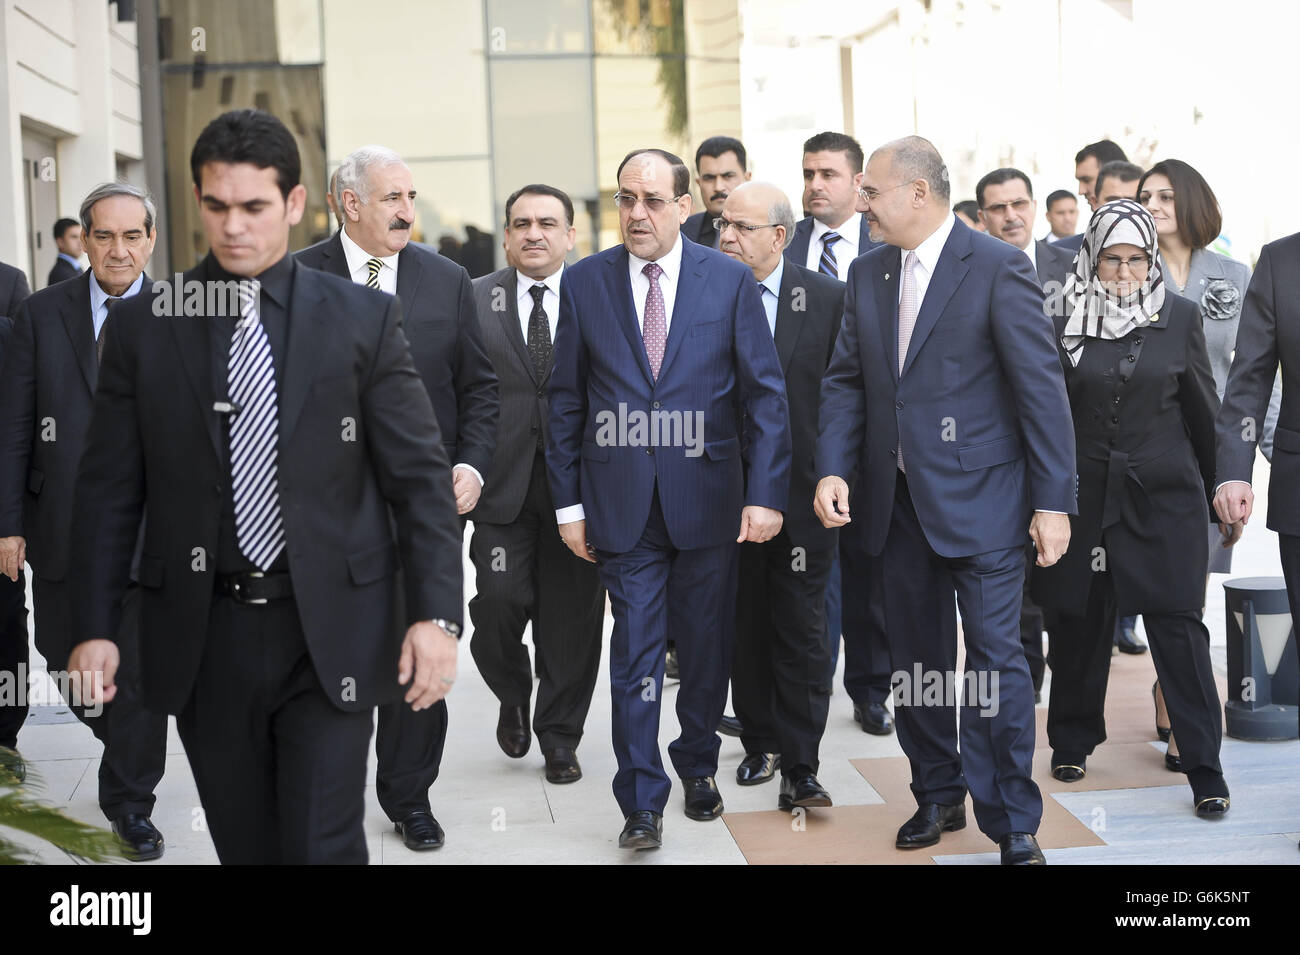 Der irakische Premierminister Nuri Al-Maliki (Mitte) nimmt an der Eröffnung der ersten Niederlassung der britischen Bank Standard Chartered, in, Bagdad, Irak, Teil, die offiziell vom Premierminister des Landes eröffnet wurde, was als wichtiger Meilenstein in seiner Erholung bezeichnet wird. Stockfoto